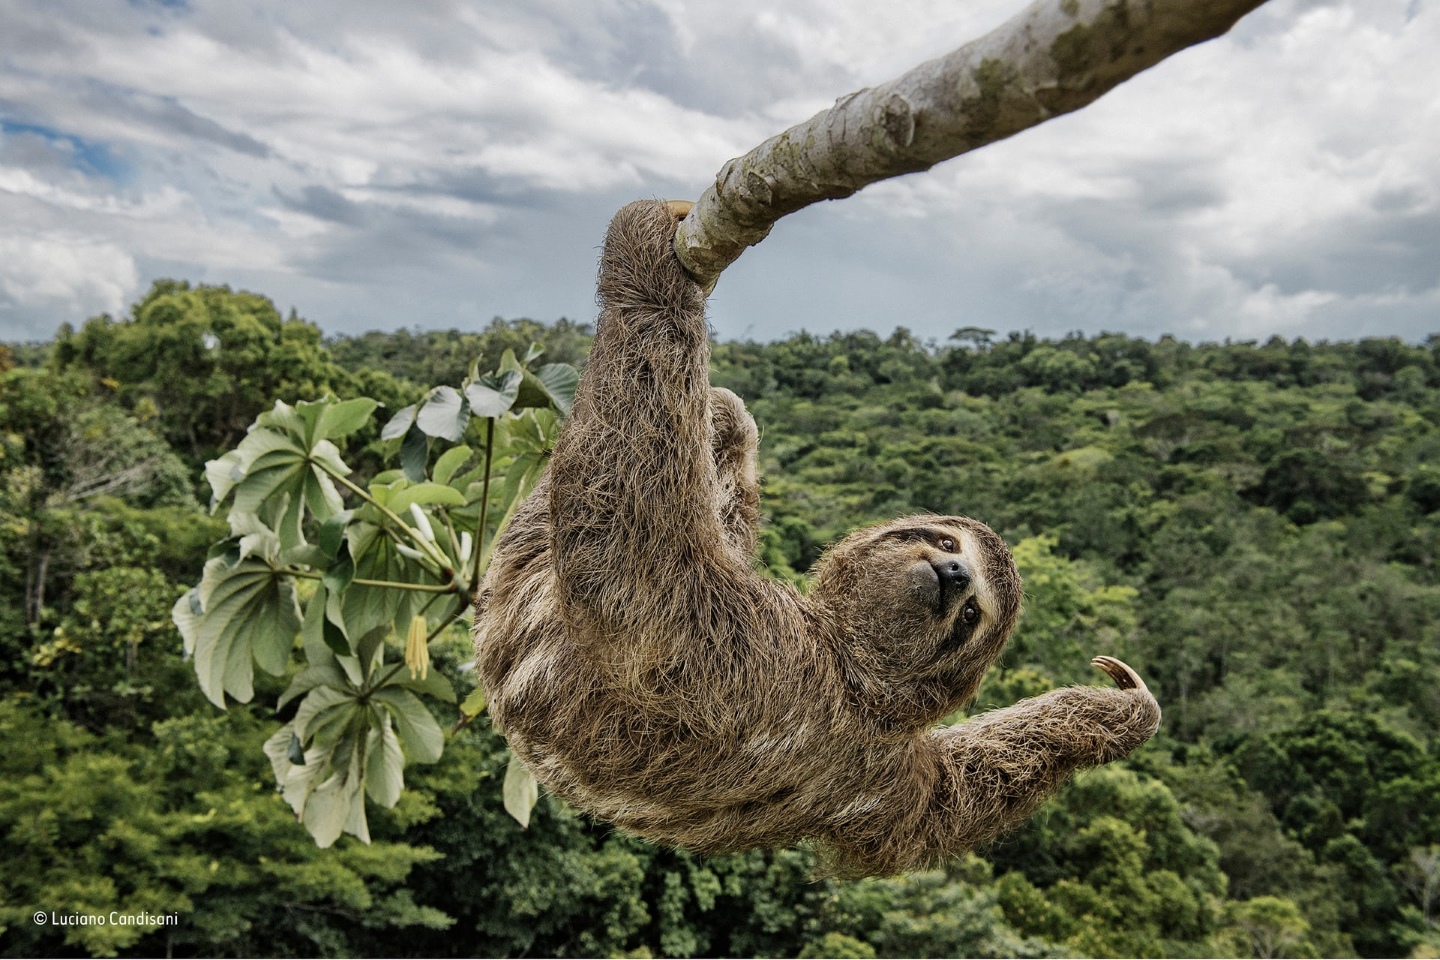 Финалист: "Ленивец на тусовке". Фотограф Лучано Кандисани должен был подняться на дерево - Цекропия, в защищенном атлантическом тропическом лесу на юге Баии, Бразилия, чтобы сделать снимок этого трёхпалого ленивца. Ленивцы любят питаться листьями этих деревьев, и поэтому они часто видны высоко в кроне деревьев. Фото: Luciano Candisani/Natural History Museum